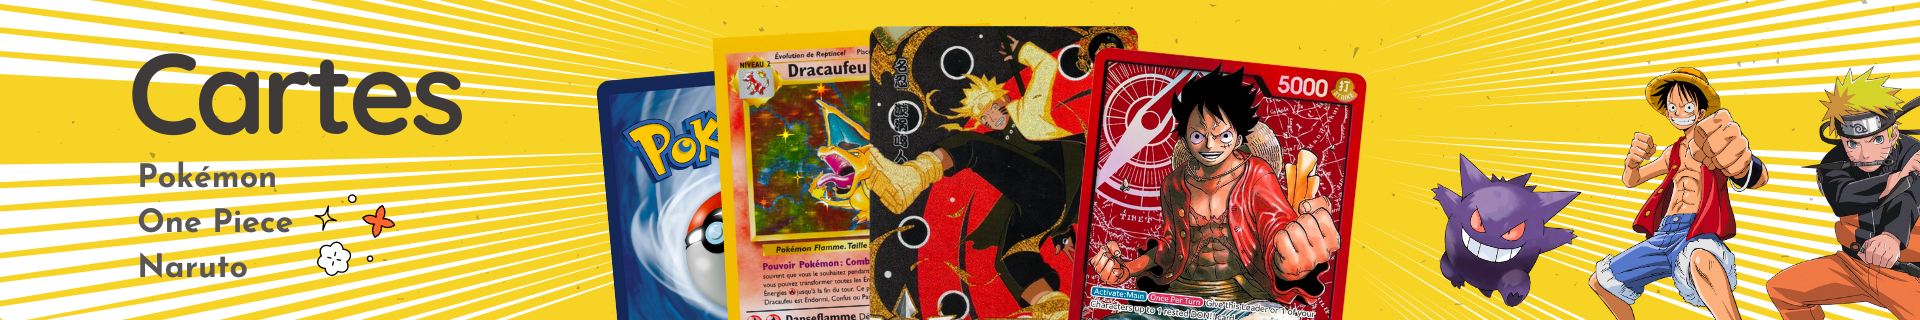 Cartes Pokémon, One Piece et Naruto - Coffrets, Display, Deck et plus !